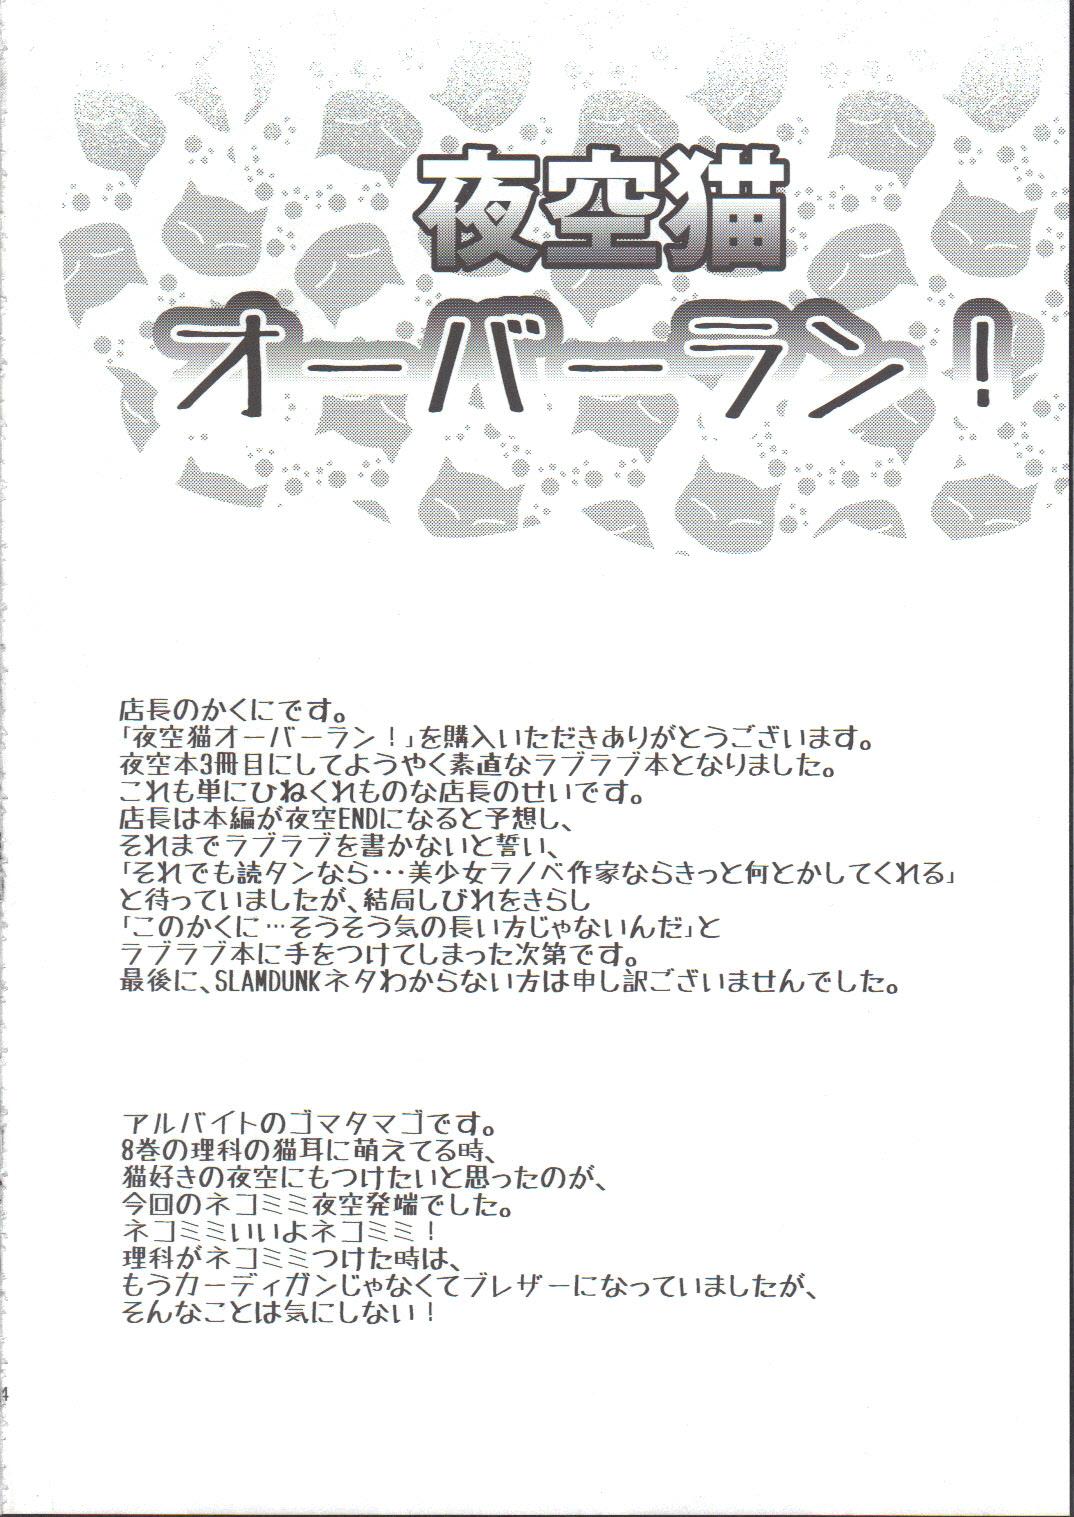 Classy Yozora Neko Overrun - Boku wa tomodachi ga sukunai Lick - Page 3